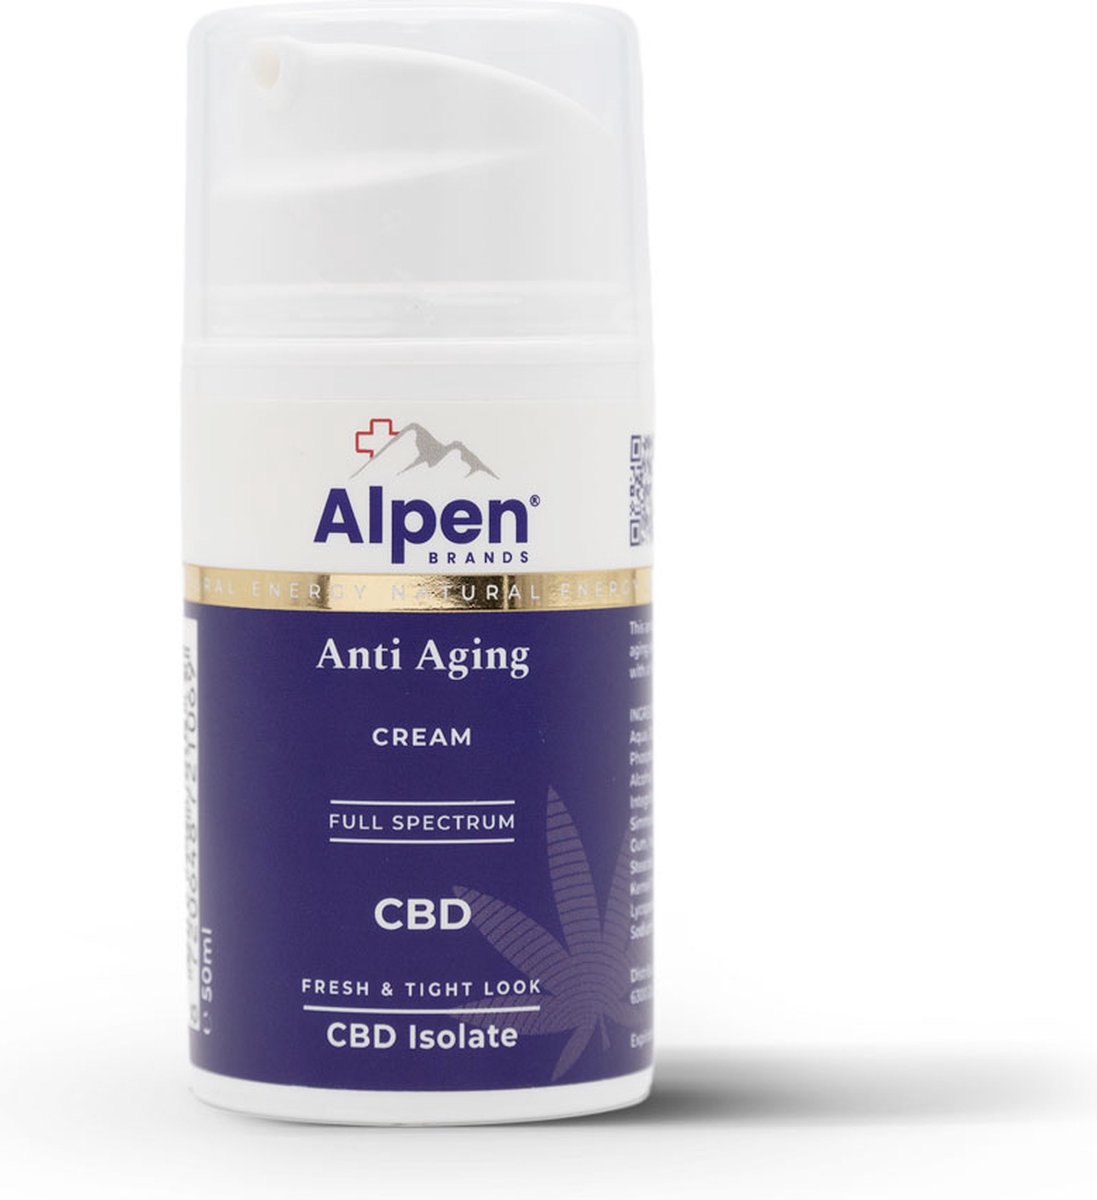 Alpenbrands - Anti Aging Cream - 100% Natuurlijk - Lab tested